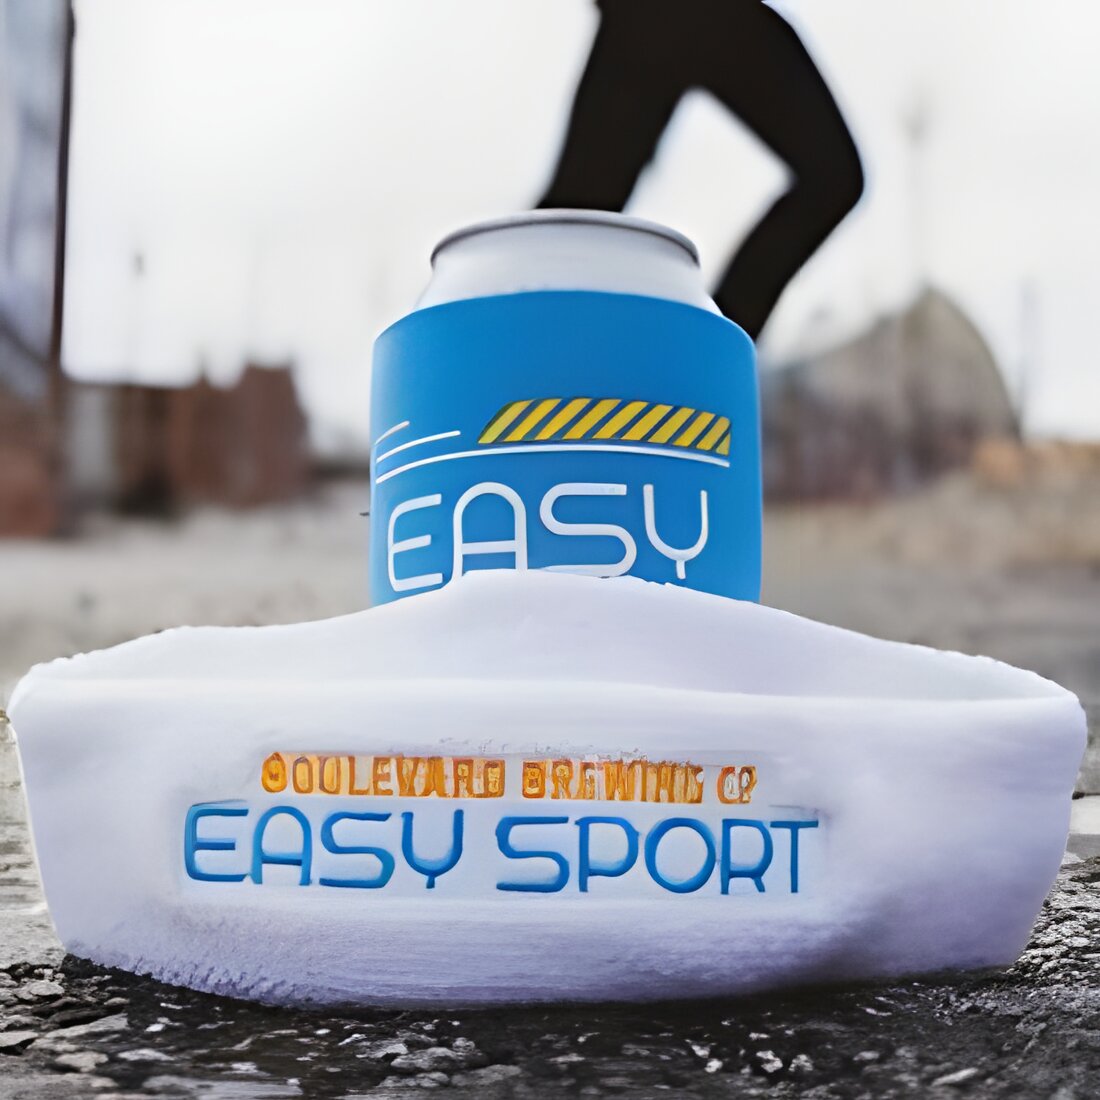 Free Easy Sport Sweatband and Koolie